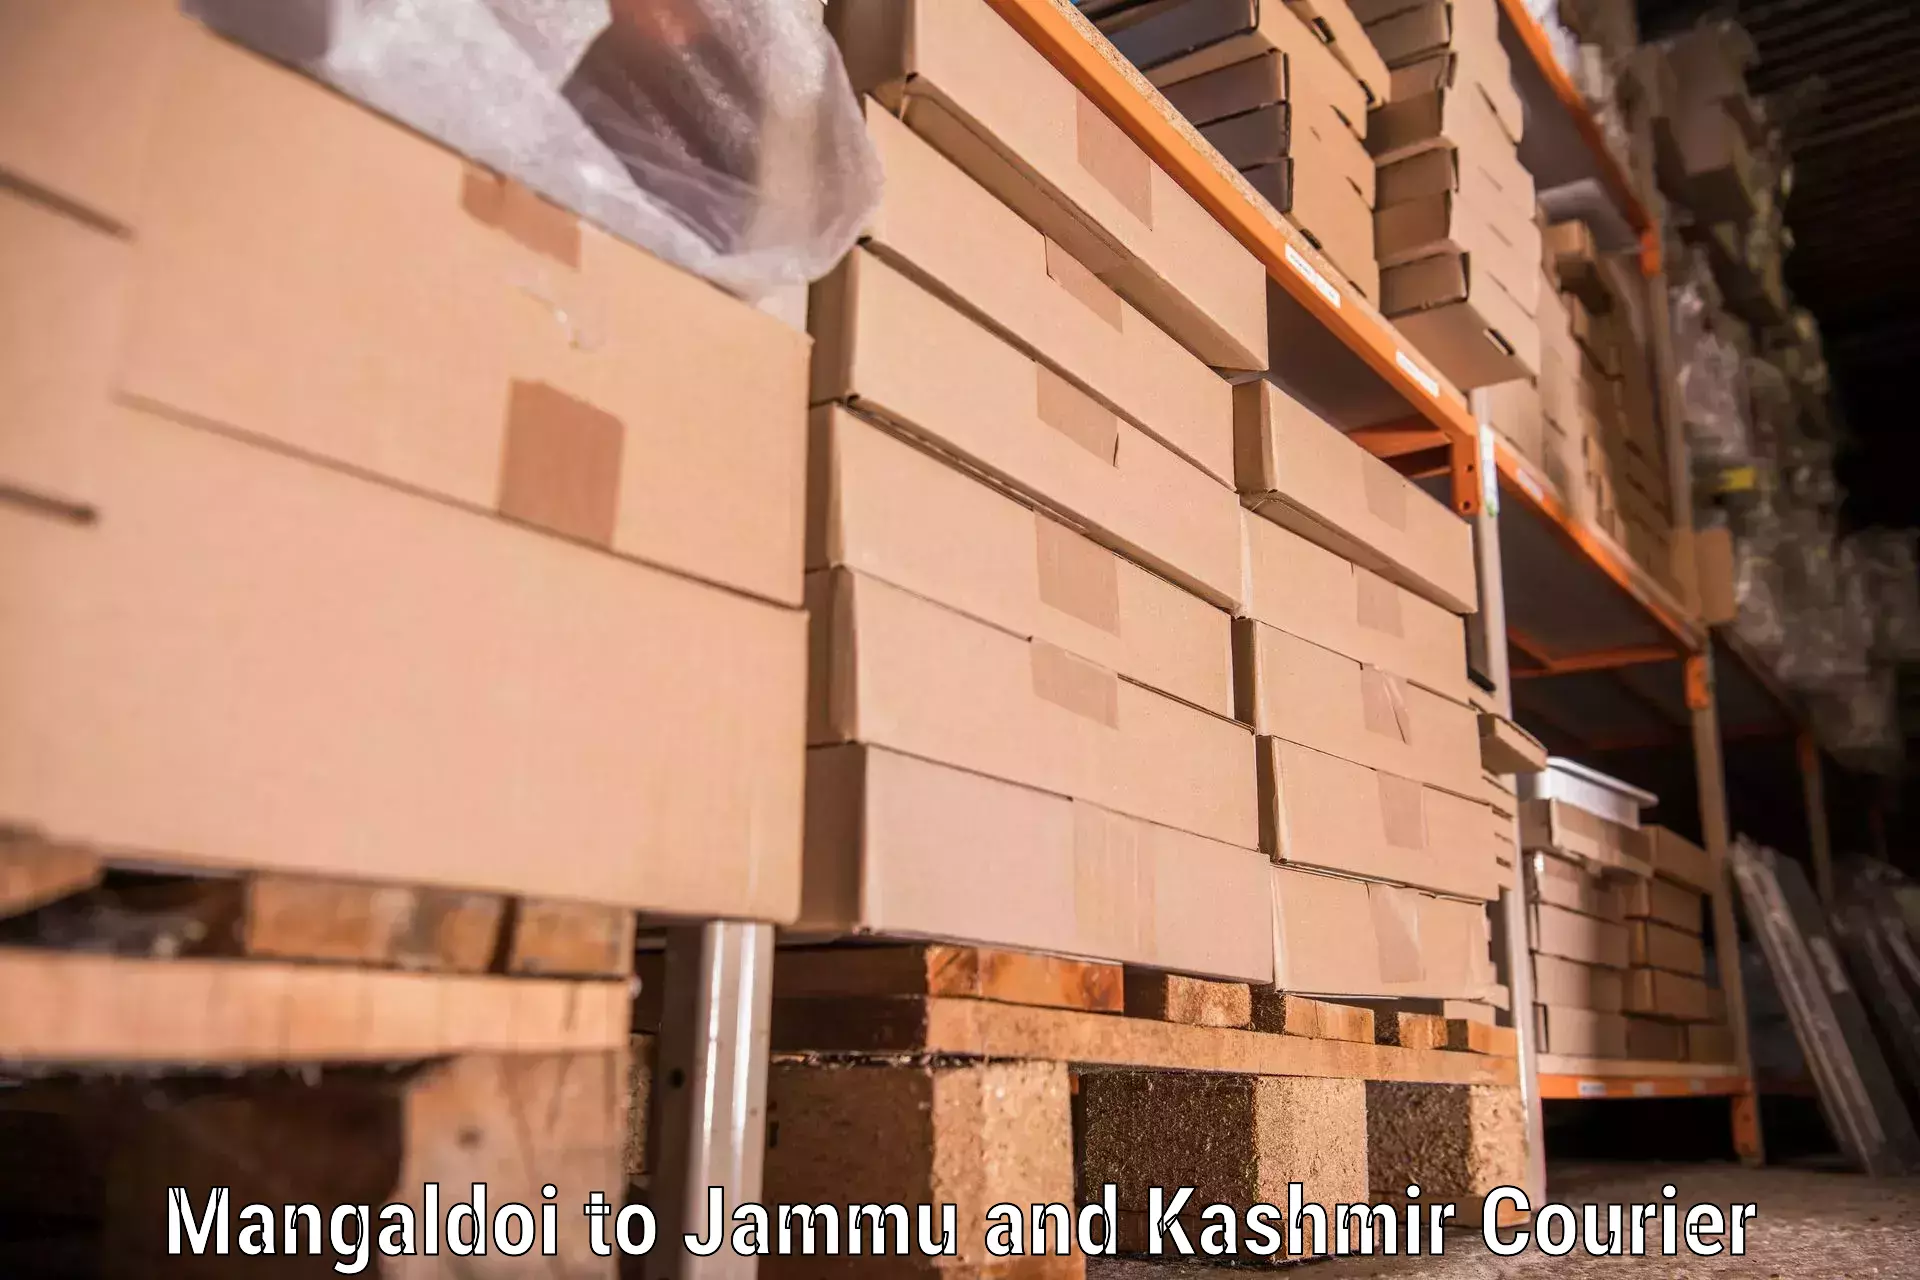 Reliable furniture movers Mangaldoi to Kishtwar